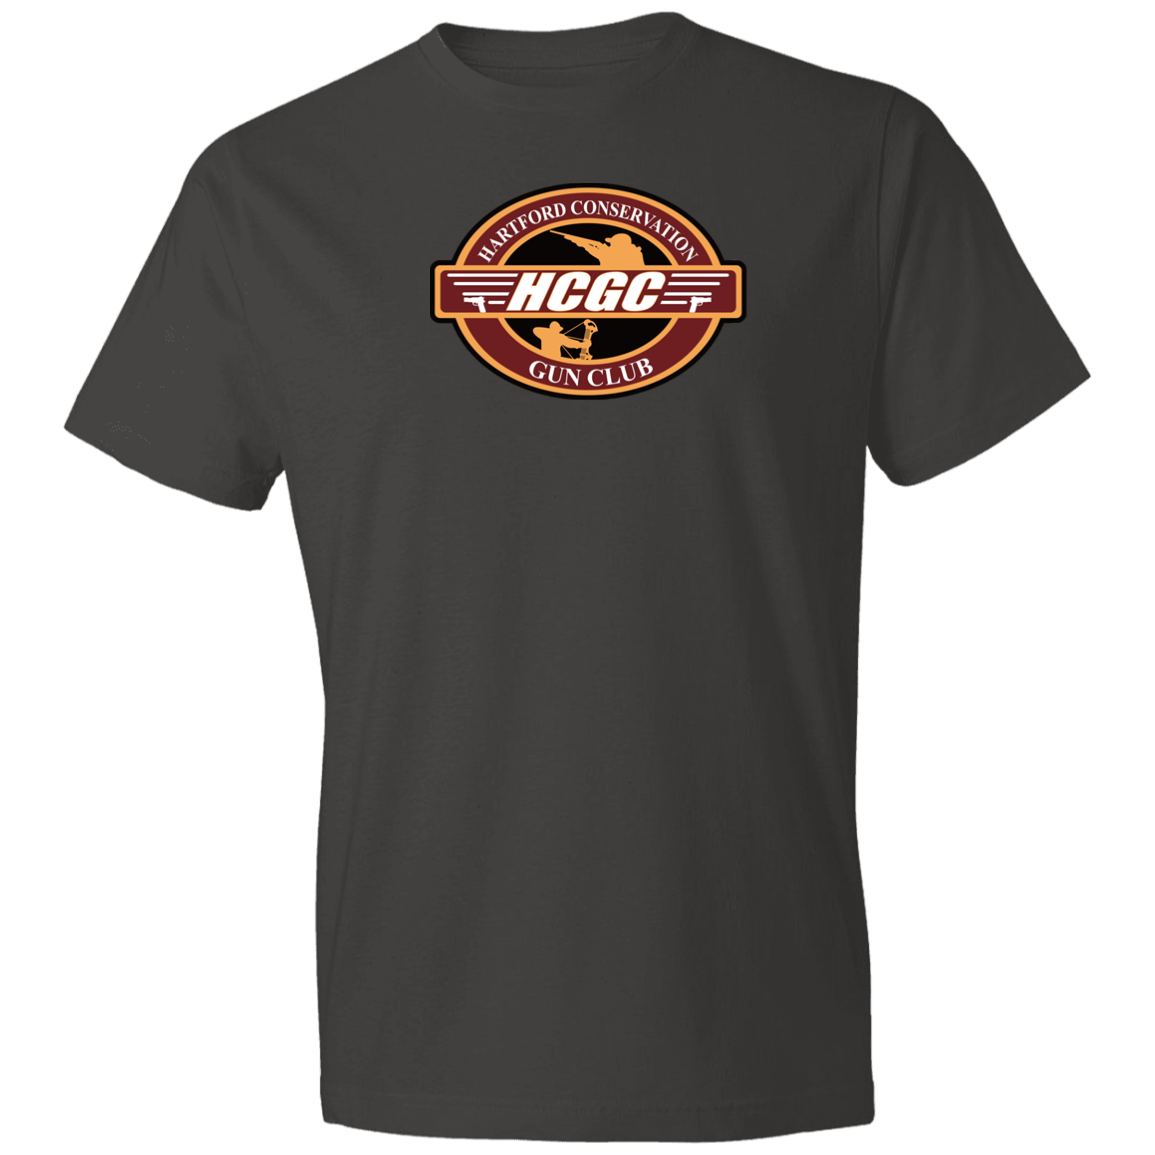 HCGC 980 Lightweight T-Shirt 4.5 oz